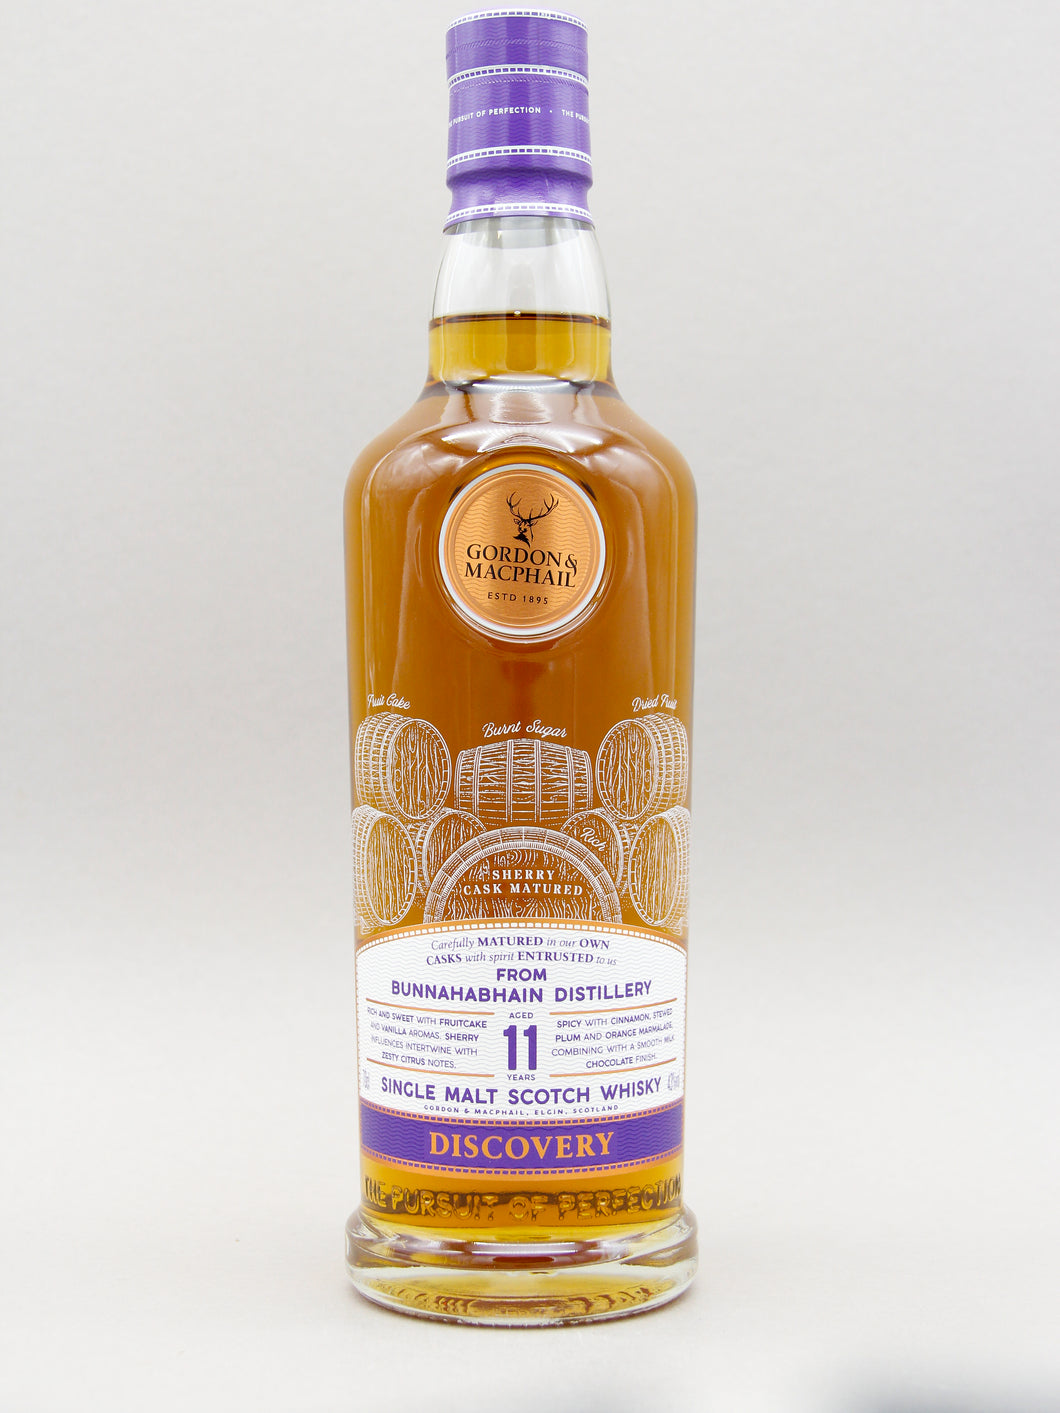 Gordon & Macphail Discovery, Bunnahabhain Distillery 11 Years, Single Malt Scotch Whisky (43%, 70cl)